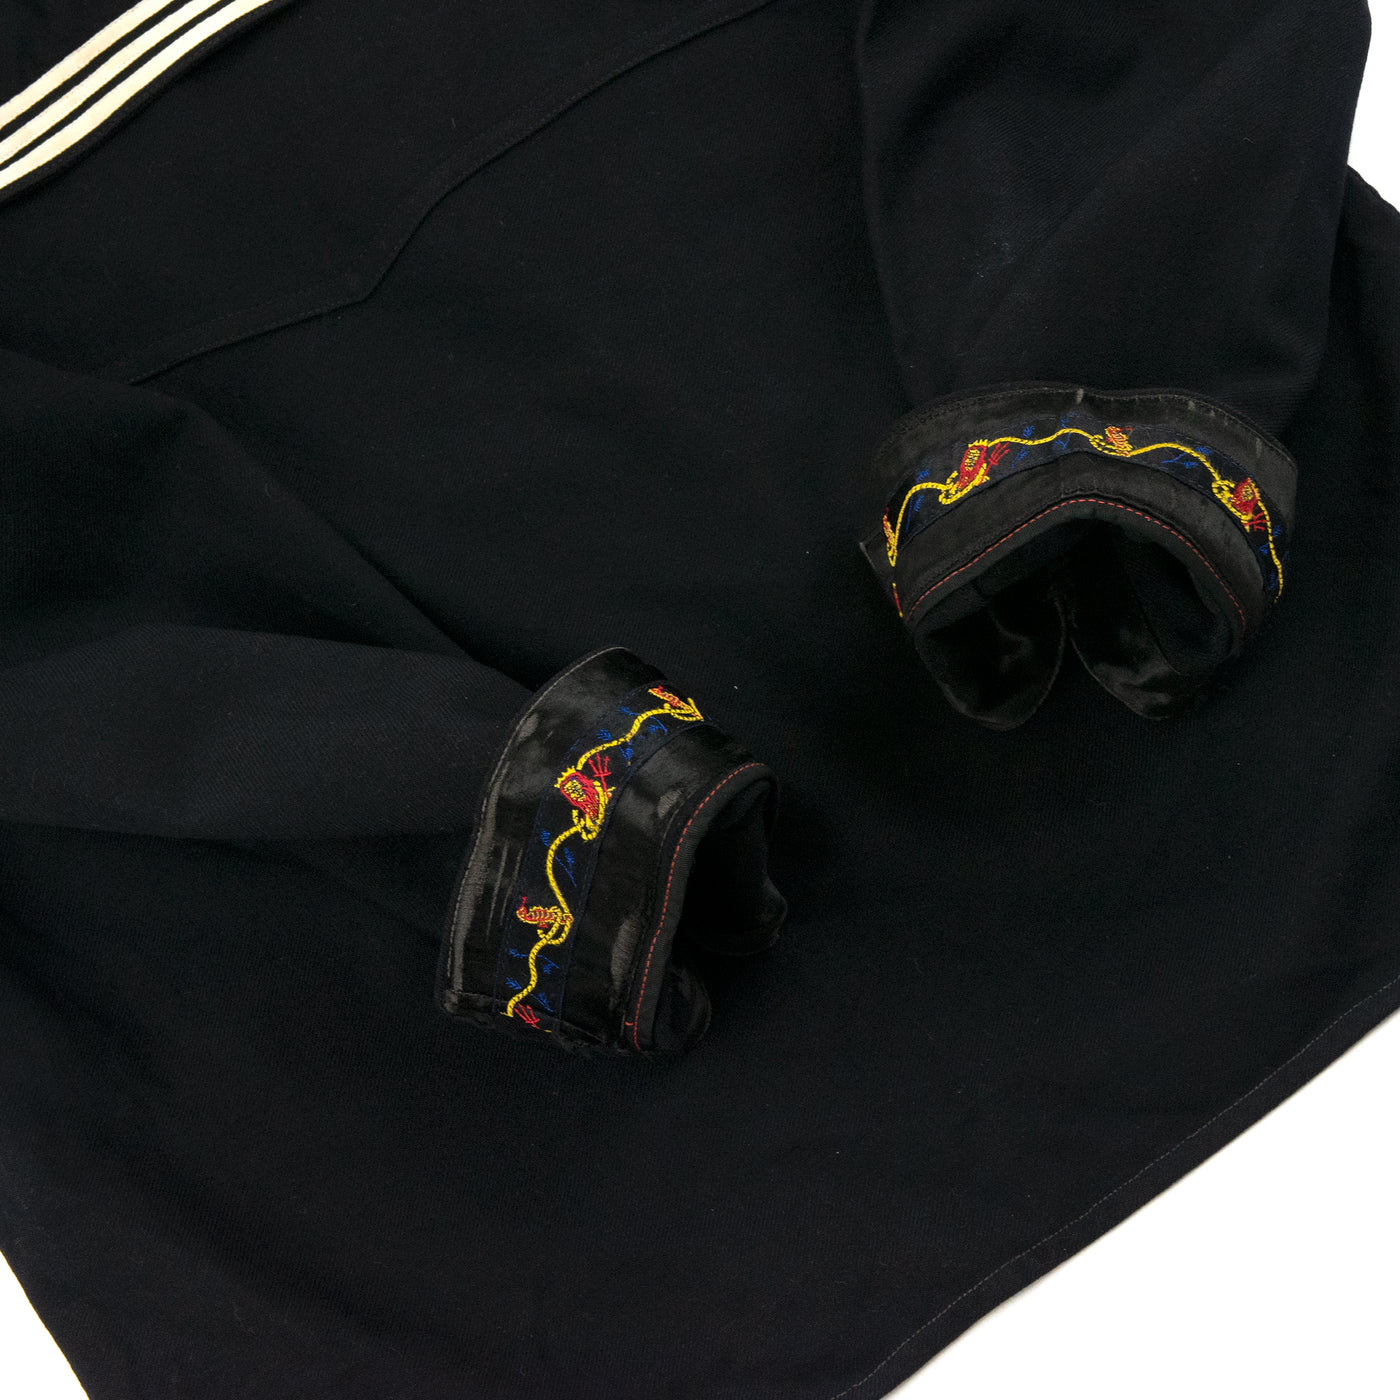 Vintage 1960 Vietnam War Era US Navy Cracker Jack Military Wool Shirt Cuffs